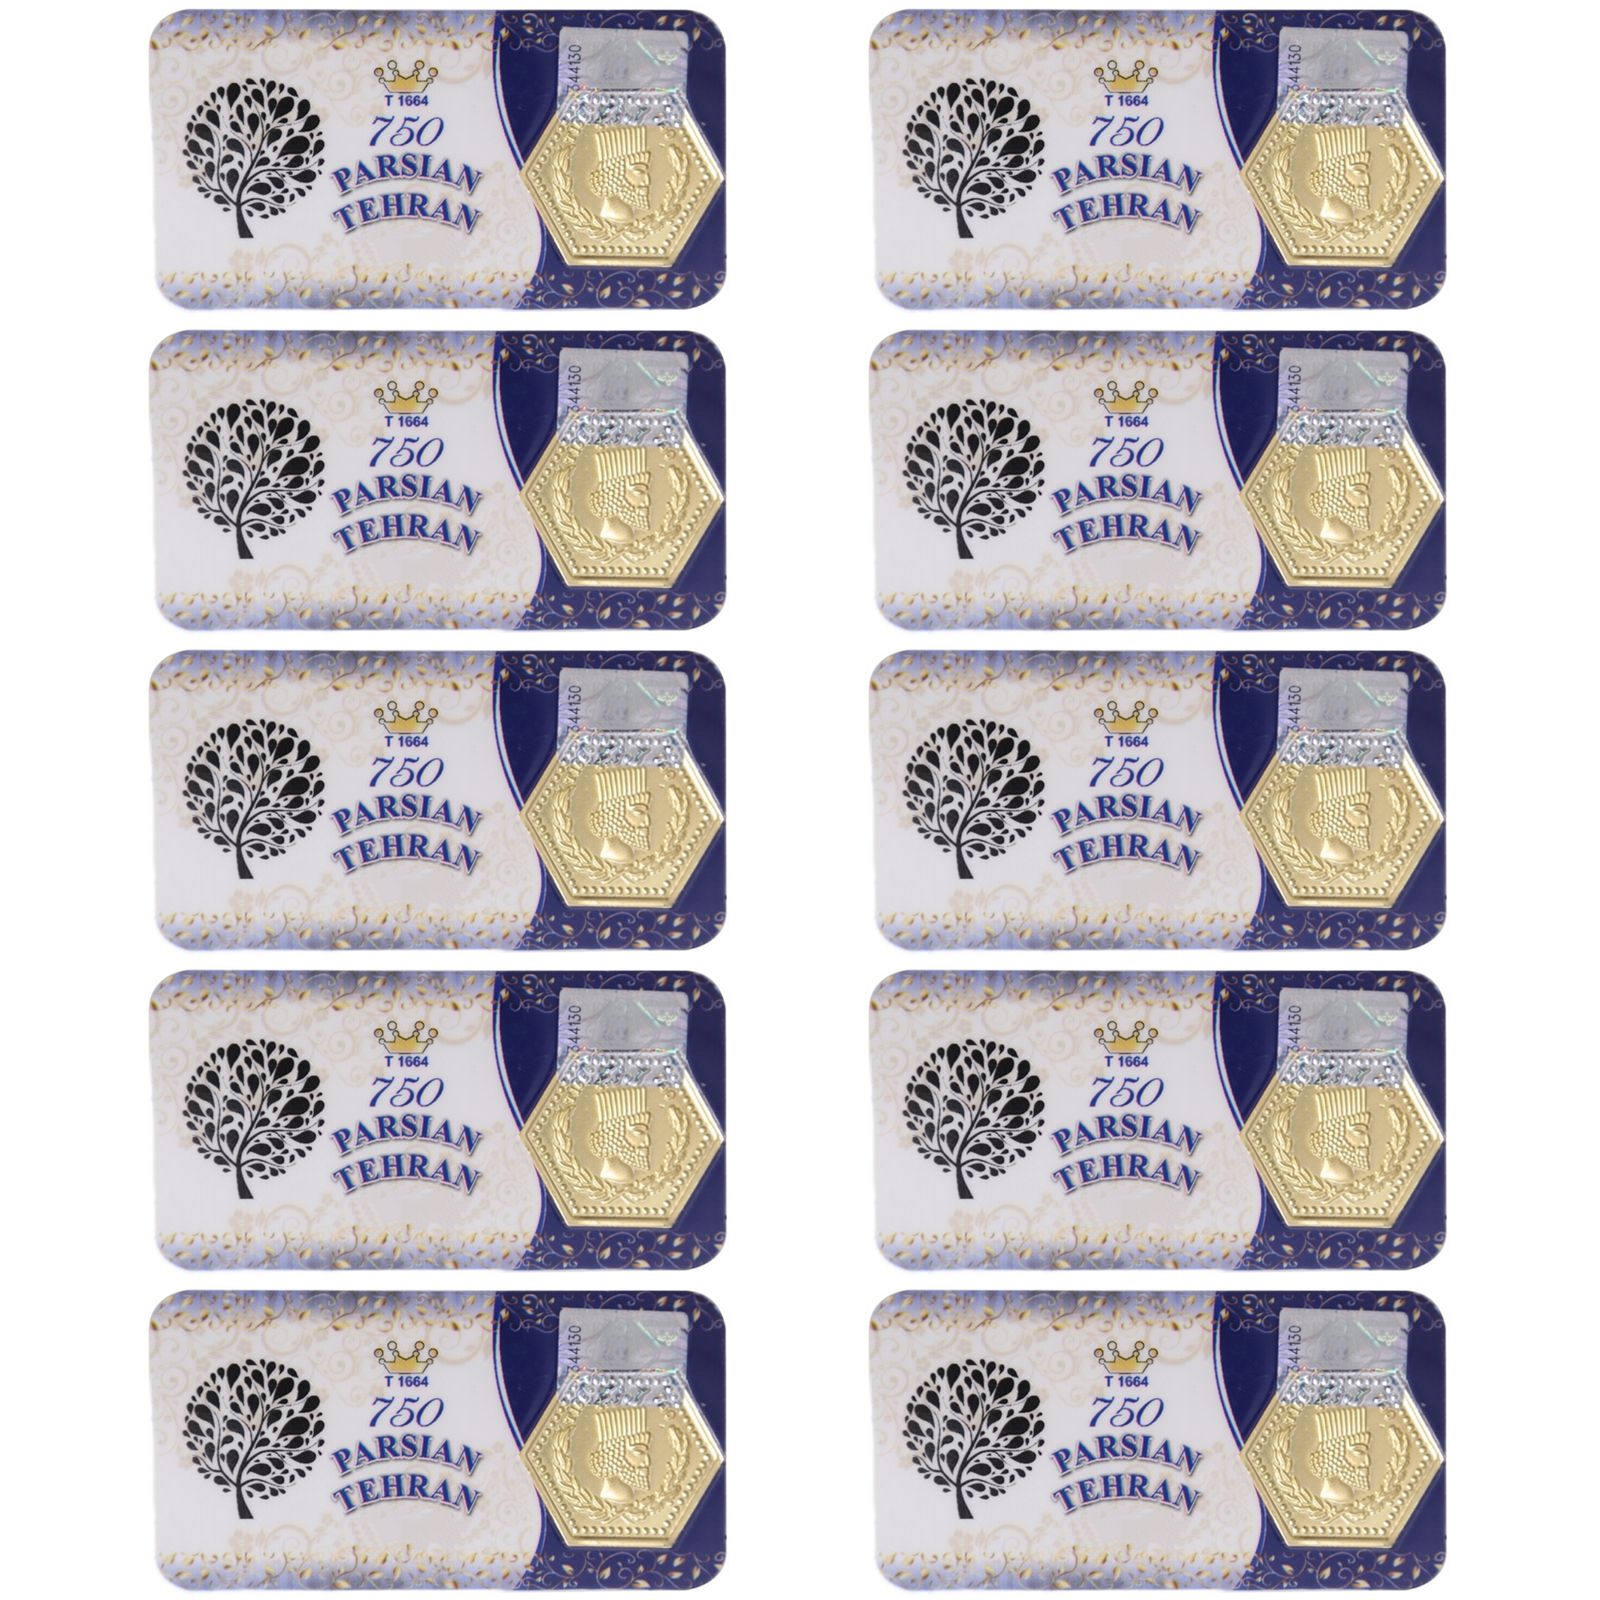 سکه گرمی طلا 18 عیار پارسیان تهران مدل K412 مجموعه 10 عددی -  - 1